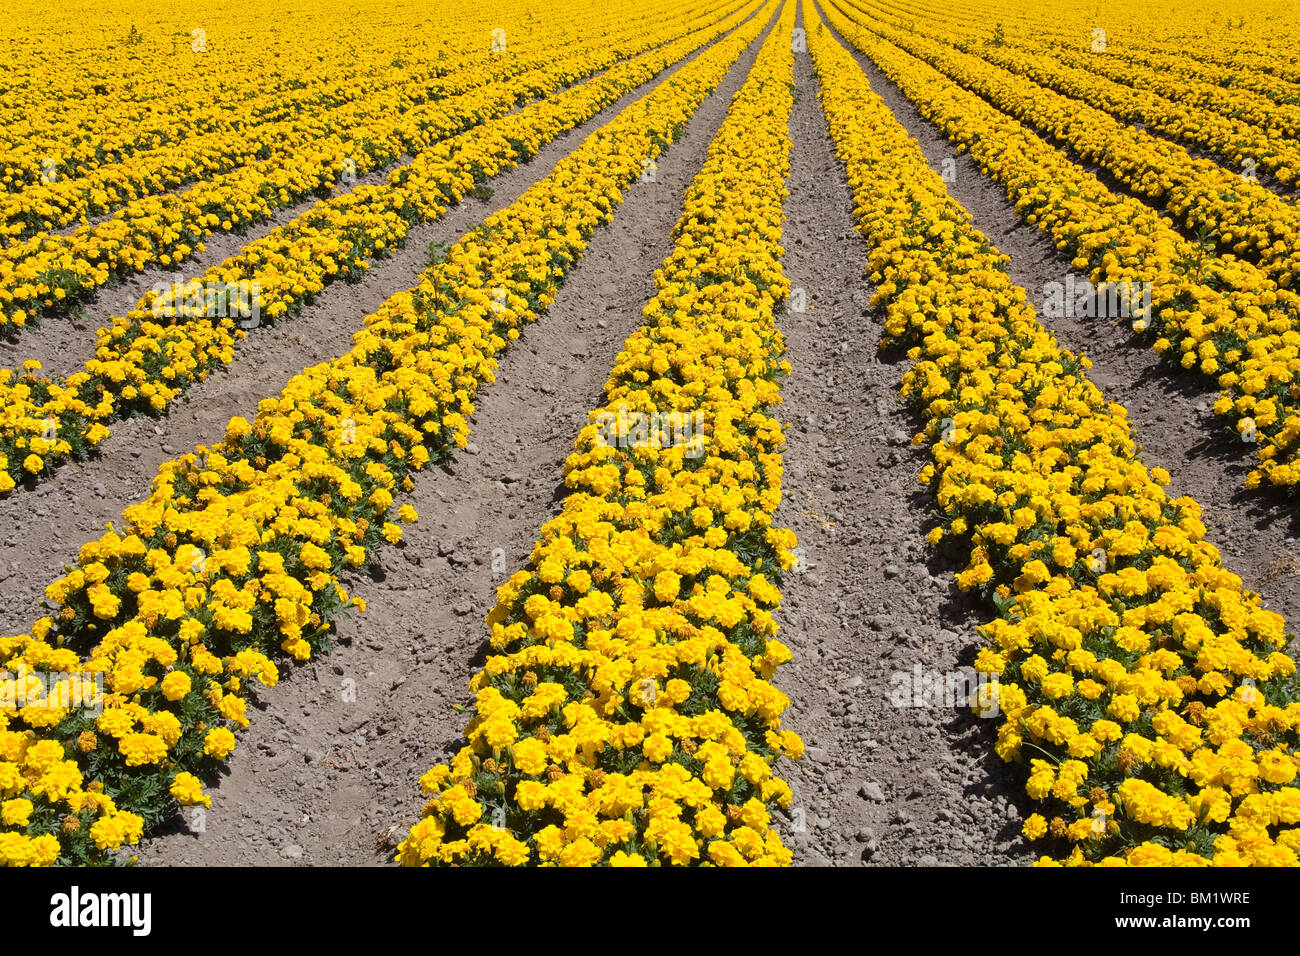 La ferme aux fleurs, Lompoc, comté de Santa Barbara, le Centre de la Californie, États-Unis d'Amérique, Amérique du Nord Banque D'Images